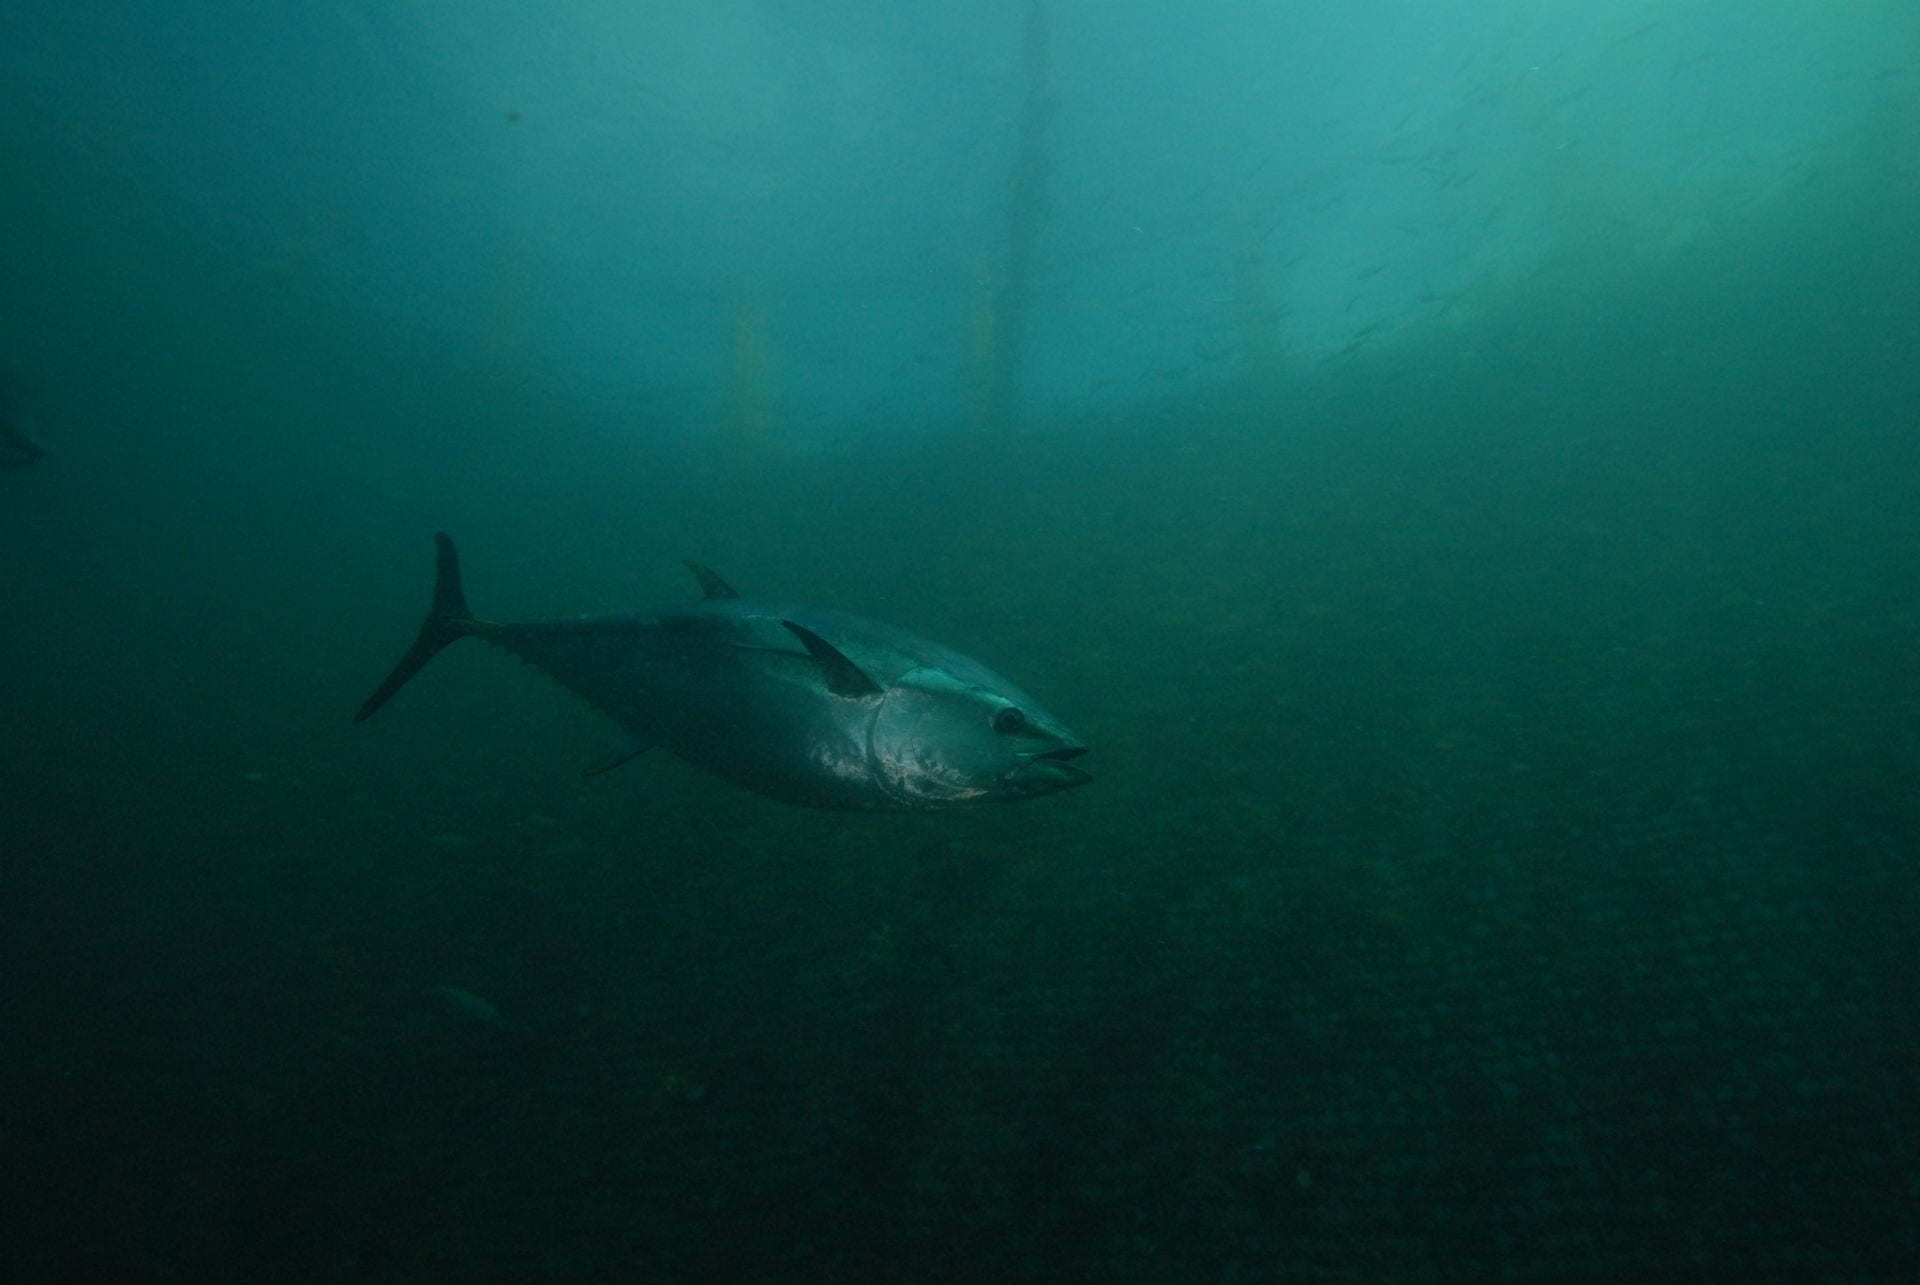 A large tuna fish swims through dark murky blue water